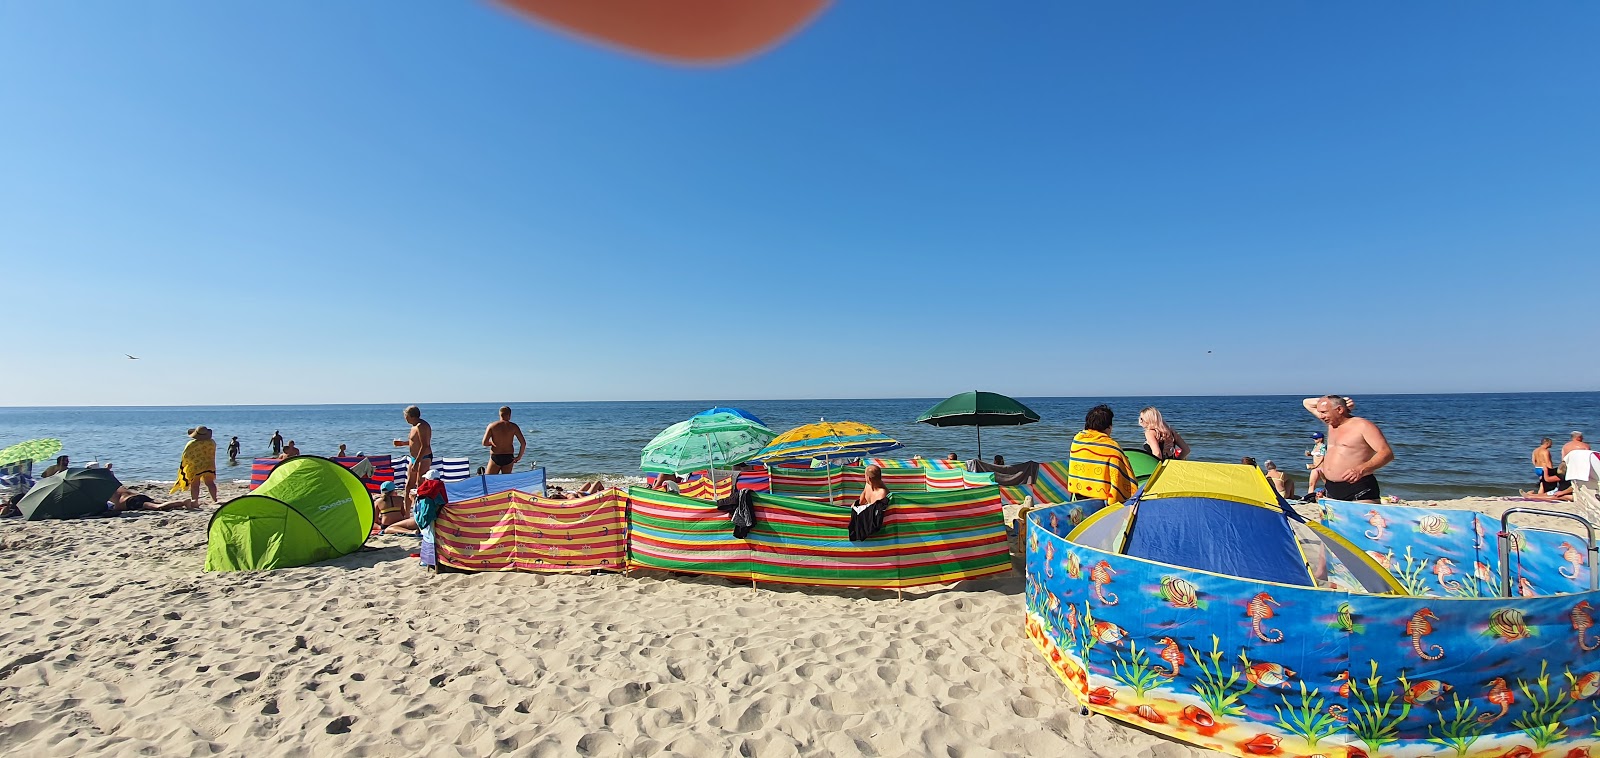 Φωτογραφία του Krynica Morska beach - δημοφιλές μέρος μεταξύ λάτρεις της χαλάρωσης